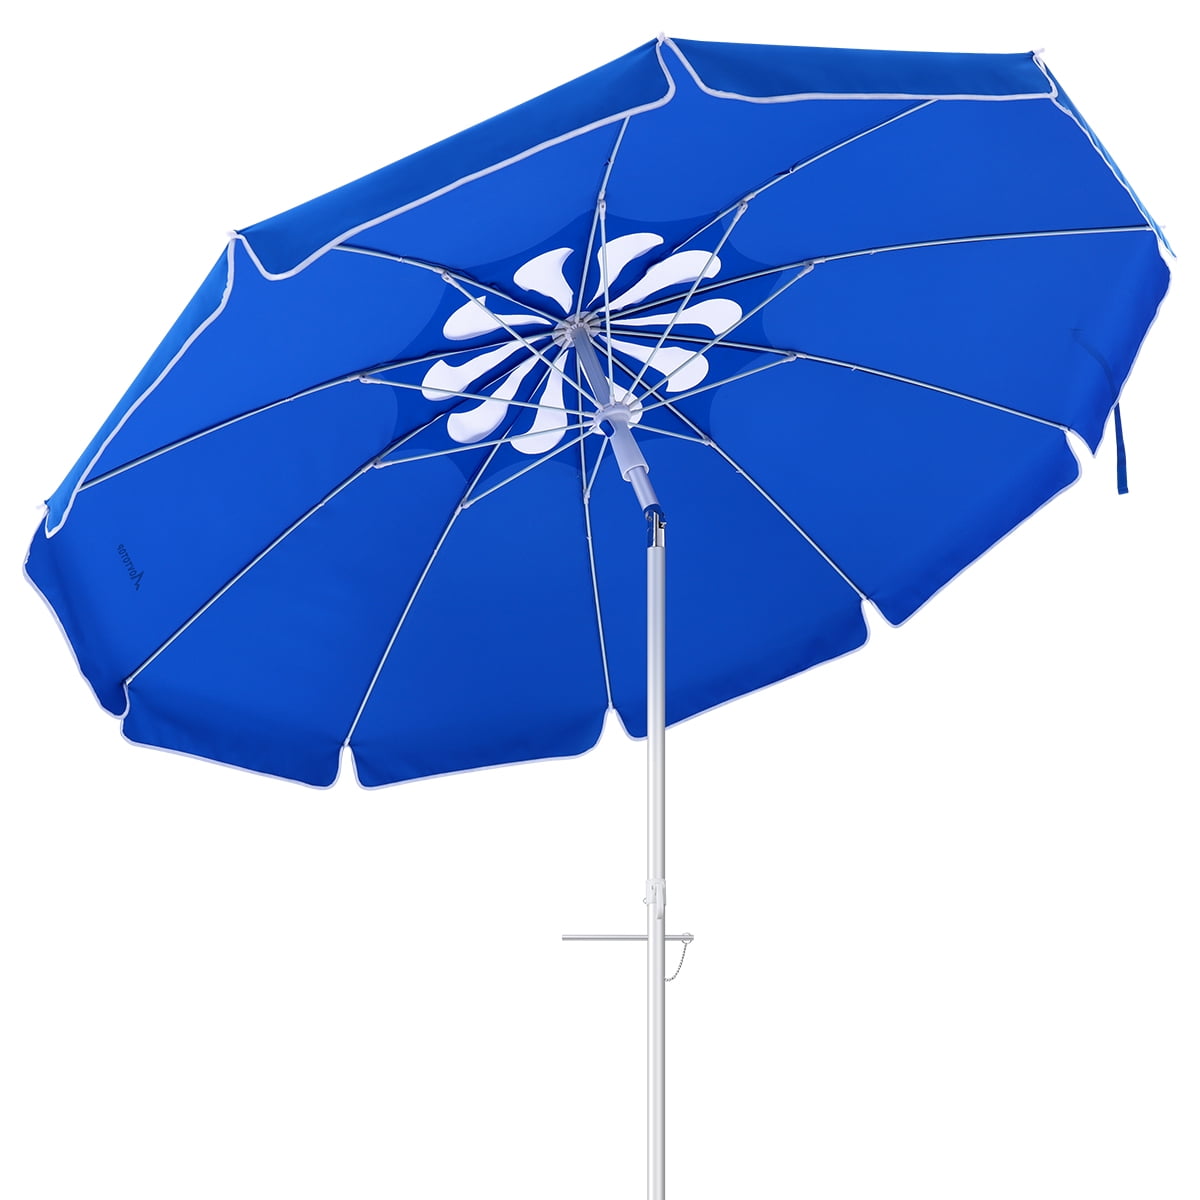 Зонтик 6 букв. Пляжный зонт MOVTOTOP. Купить пляжный зонт MOVTOTOP.